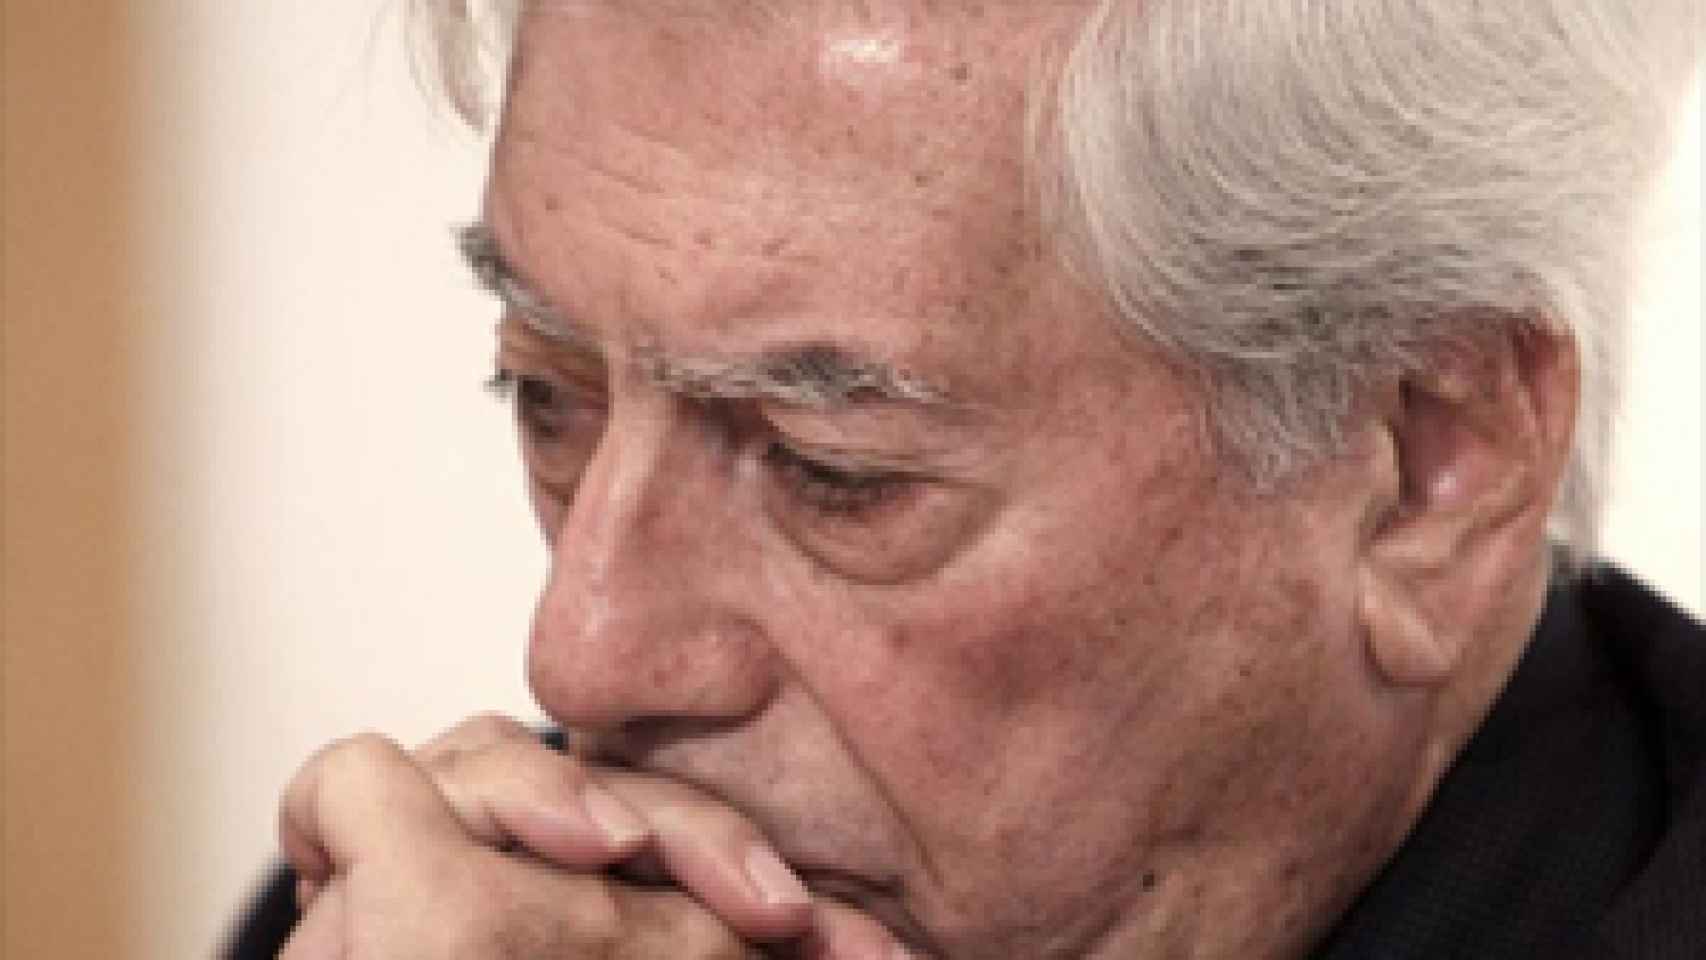 Image: Mario Vargas Llosa: El nacionalismo no ha dado ni un solo libro legible